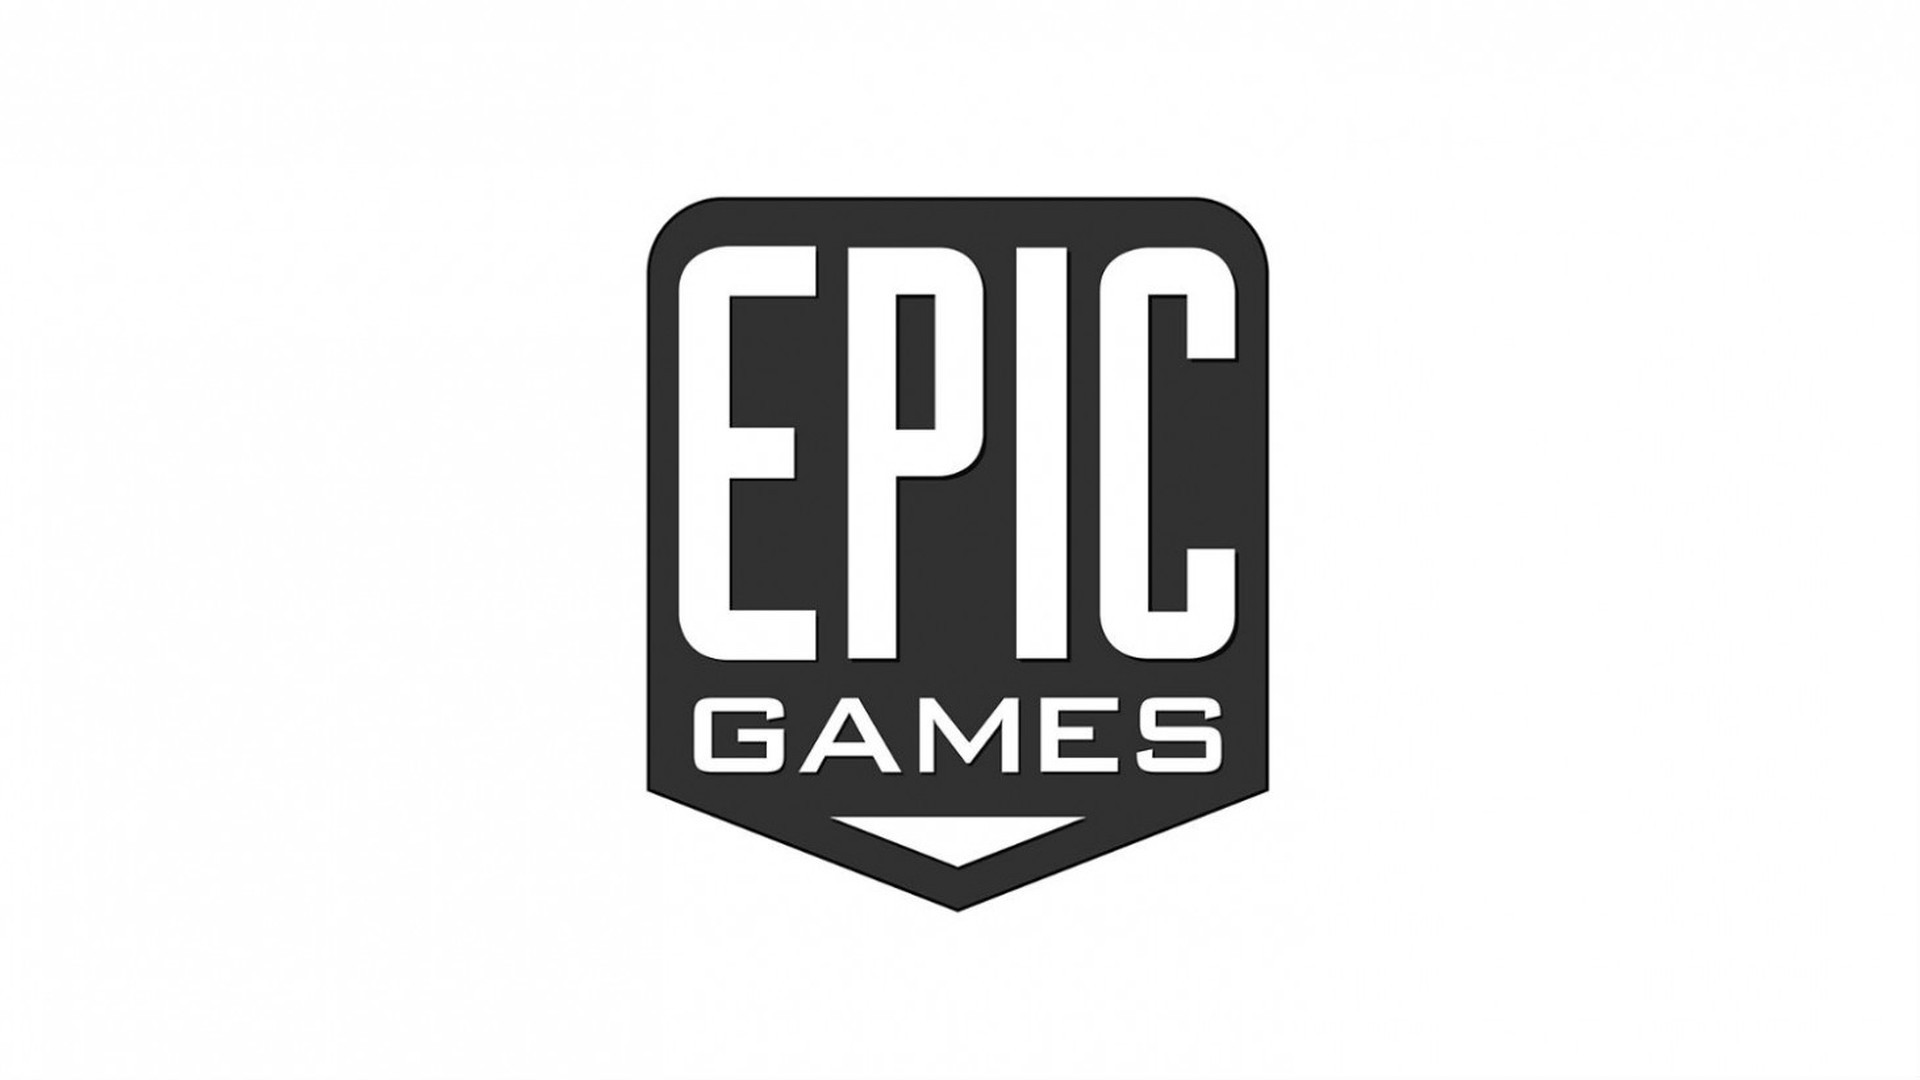 Epic Games Logo sfondo bianco